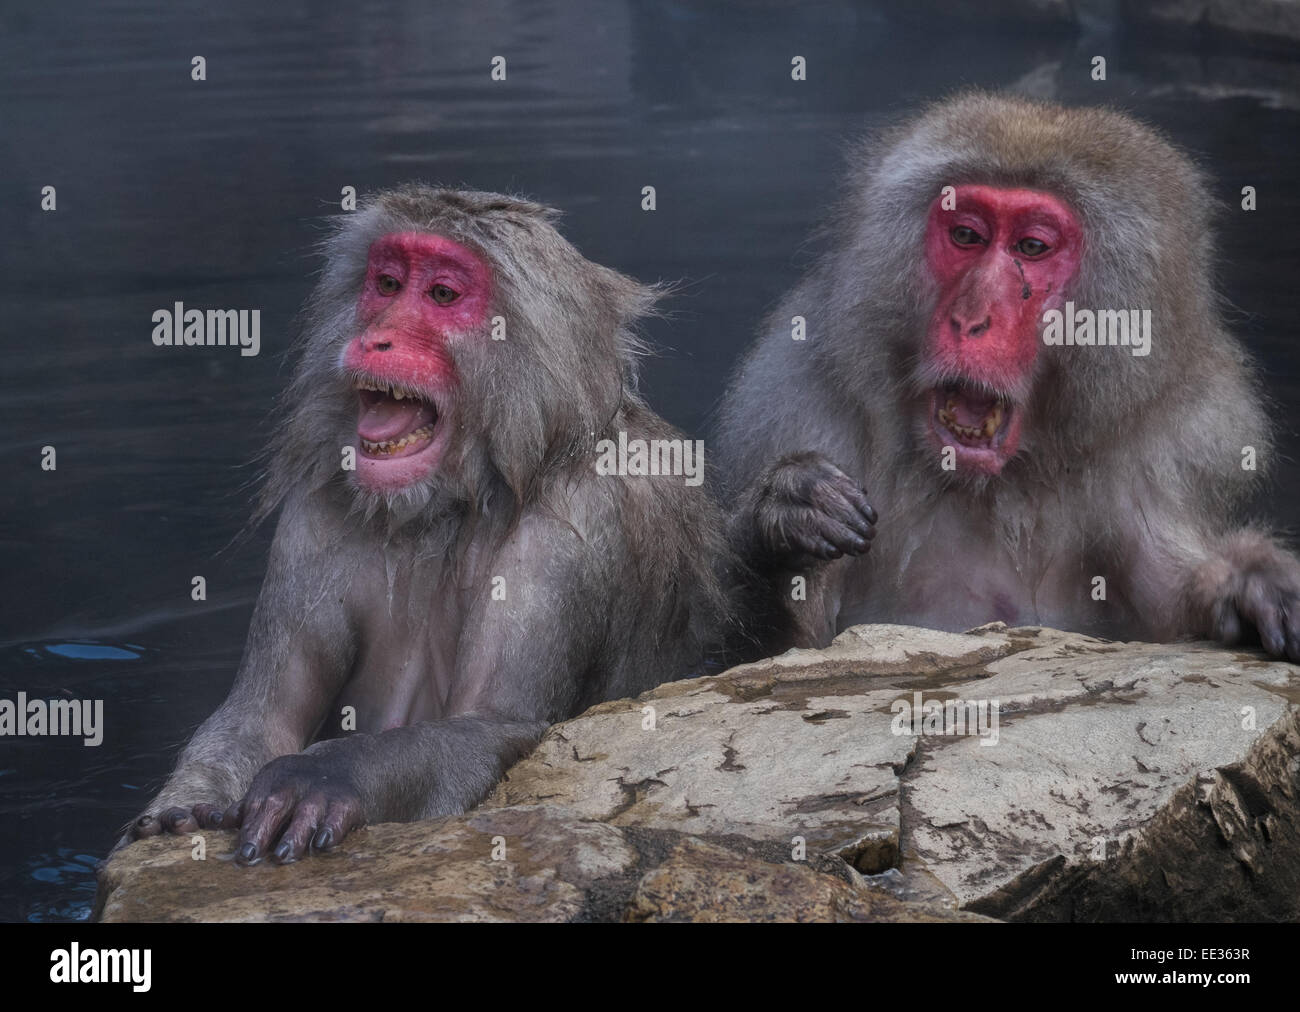 Shocked monkeys Stock Photo